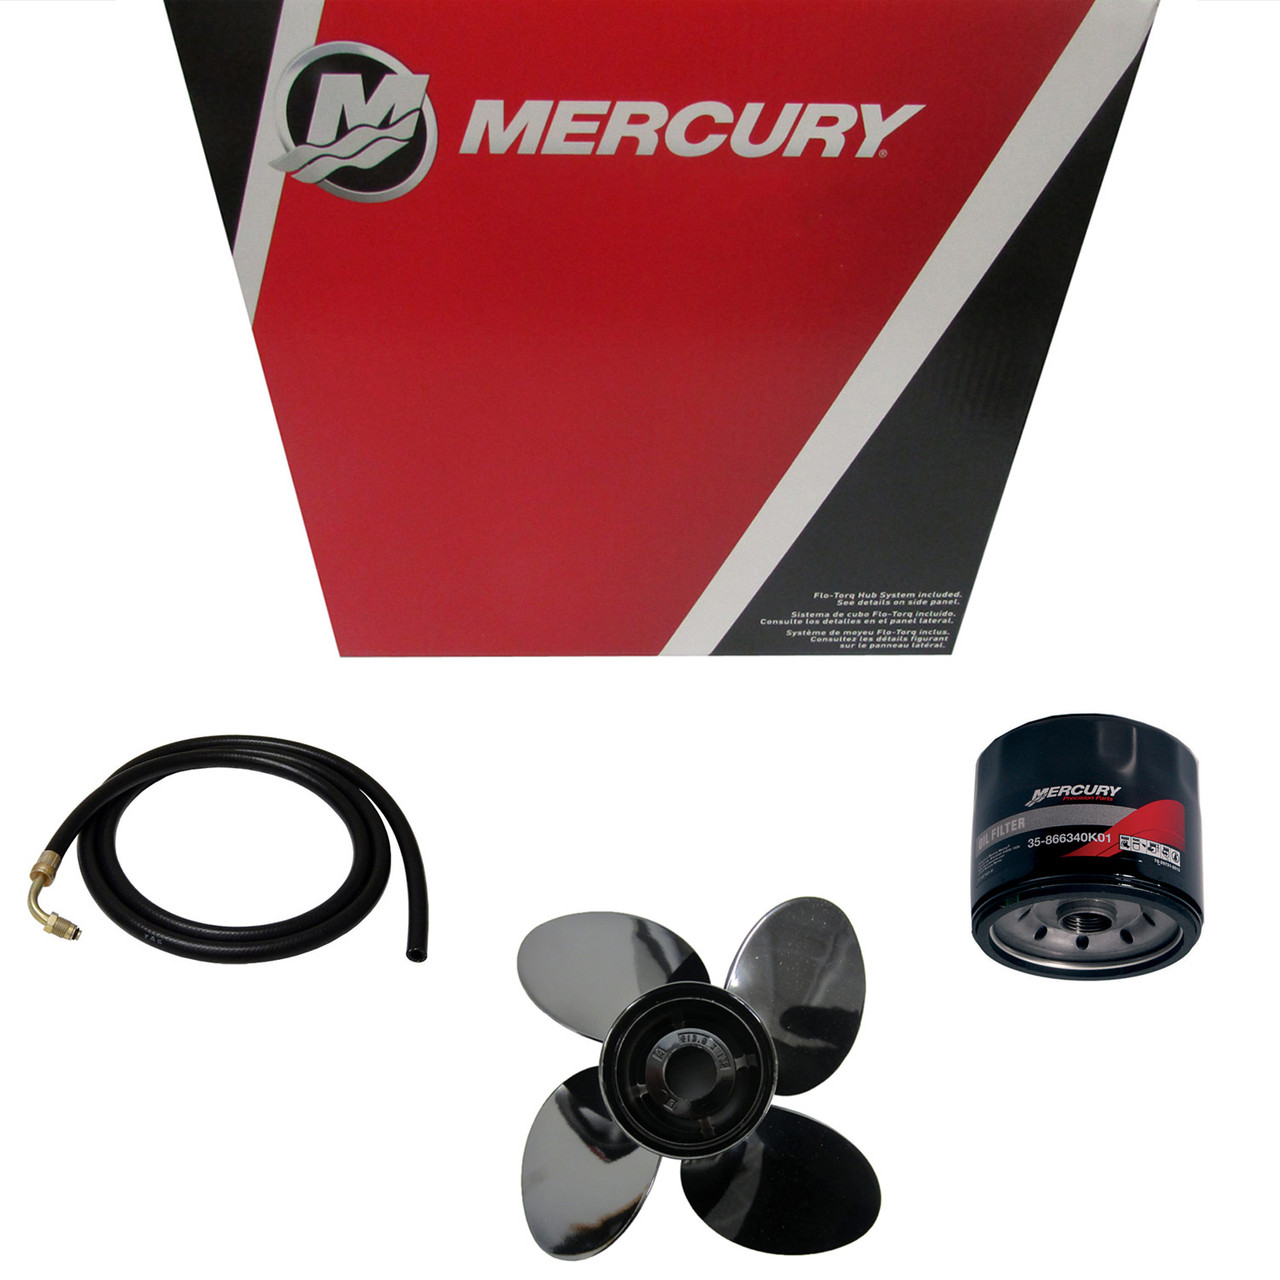 Mercury Marine / Mercruiser New OEM Fitting, 22-895797001